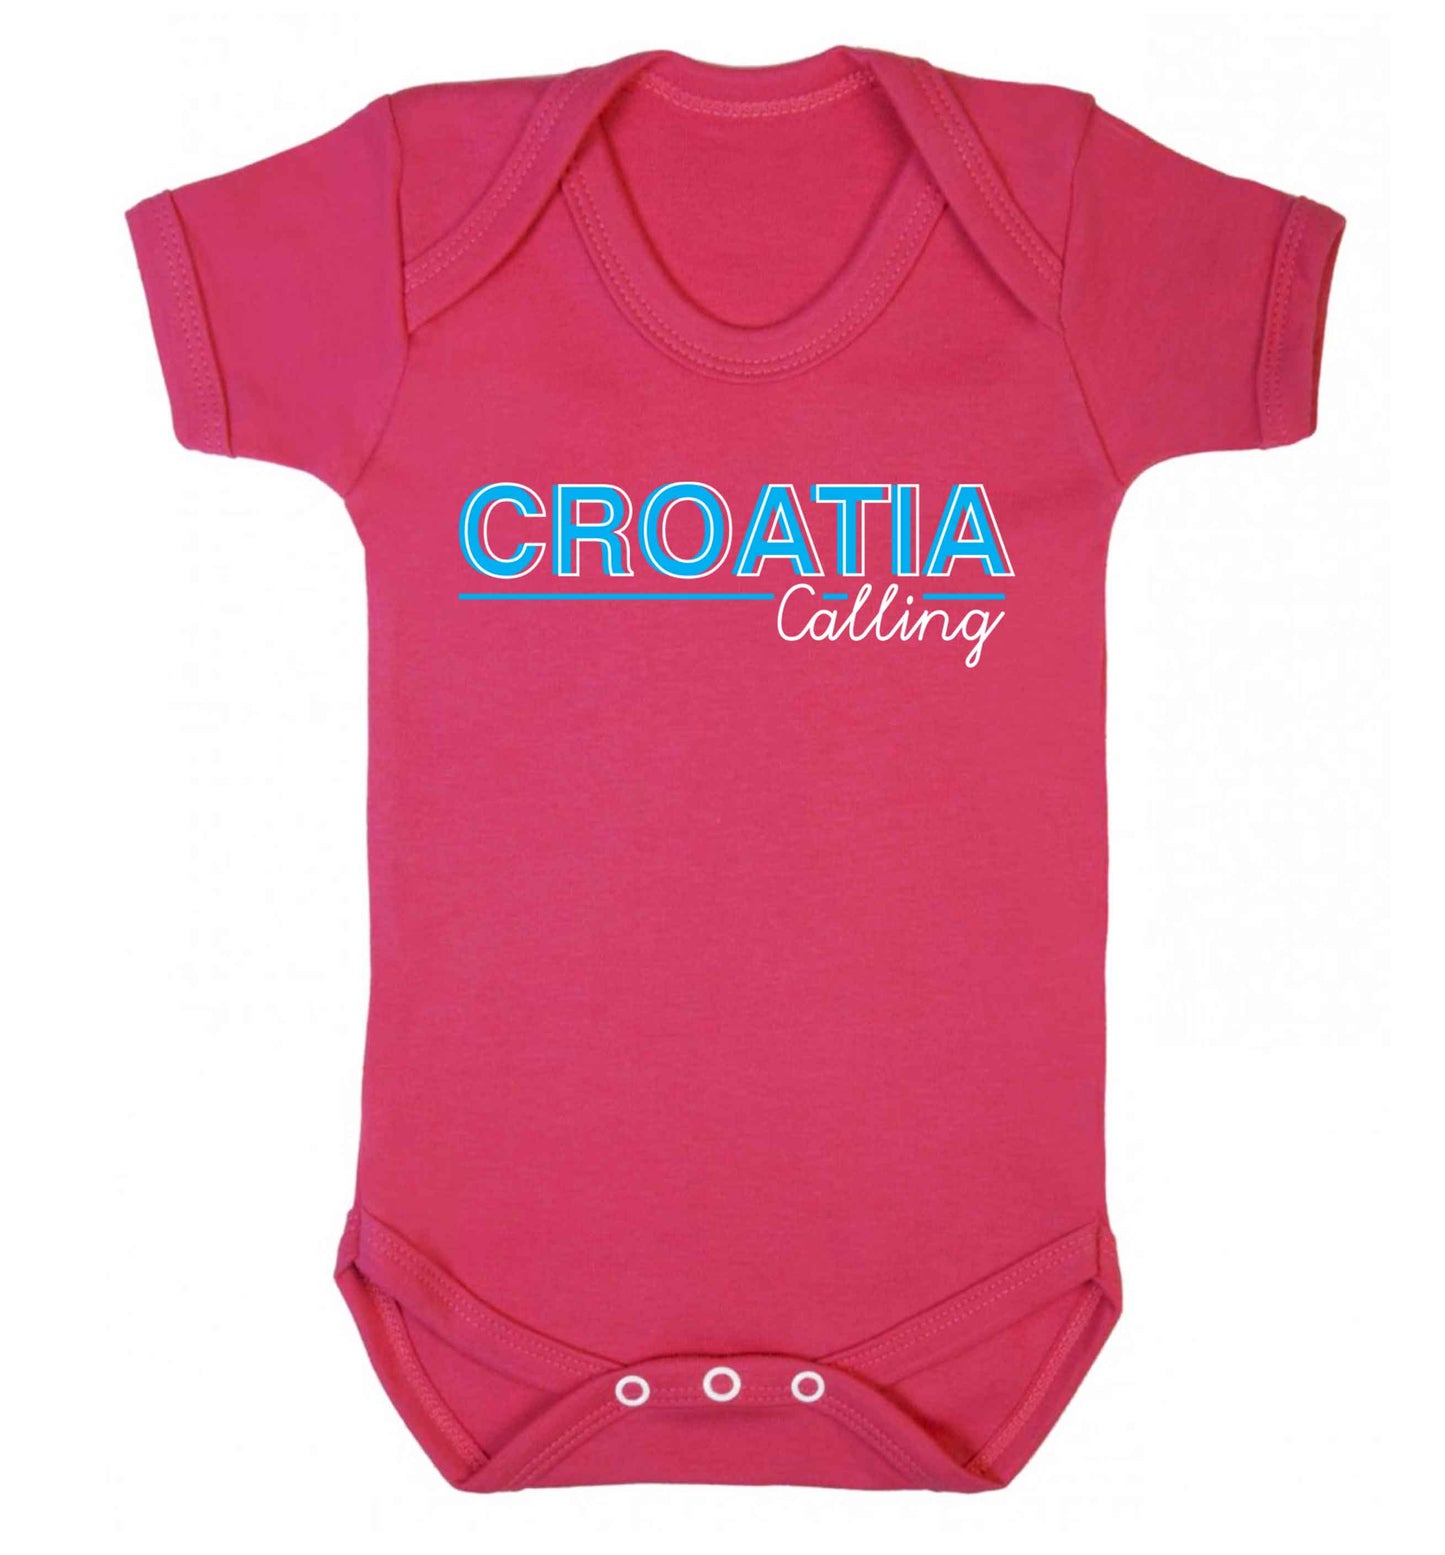 Croatia calling Baby Vest dark pink 18-24 months